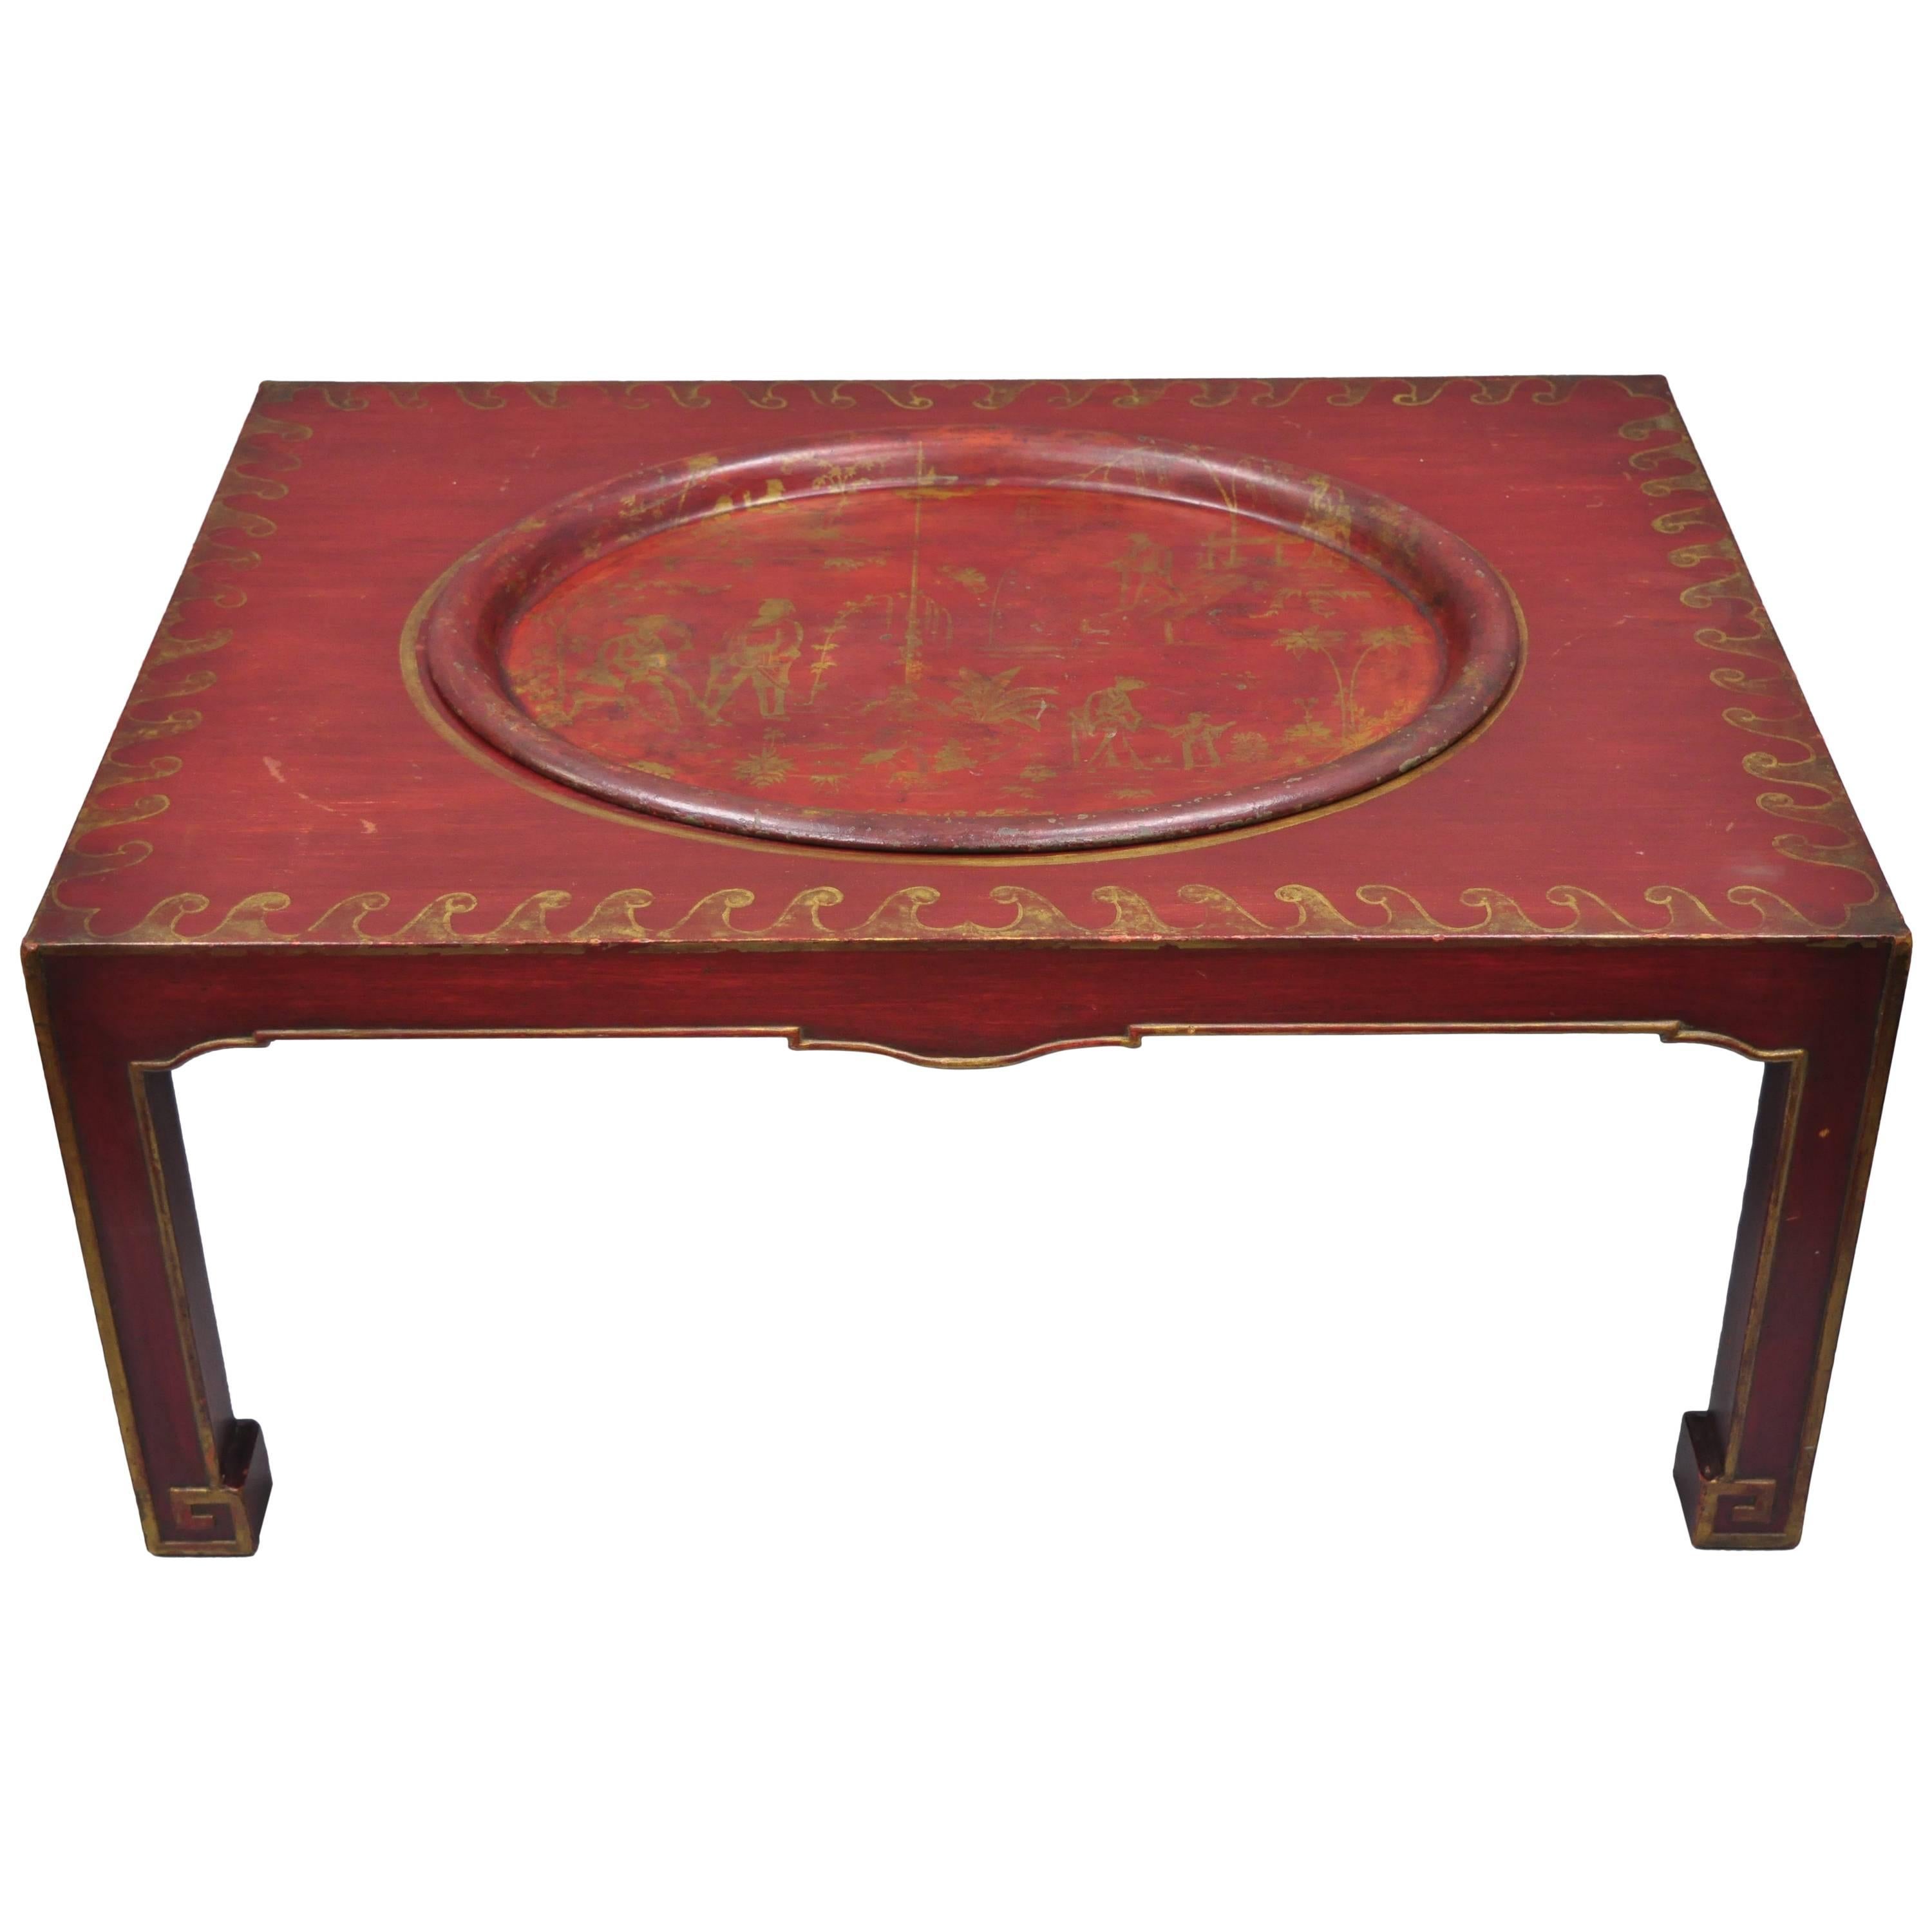 Table basse orientale chinoiseries rouge avec plateau de service amovible en métal tôle